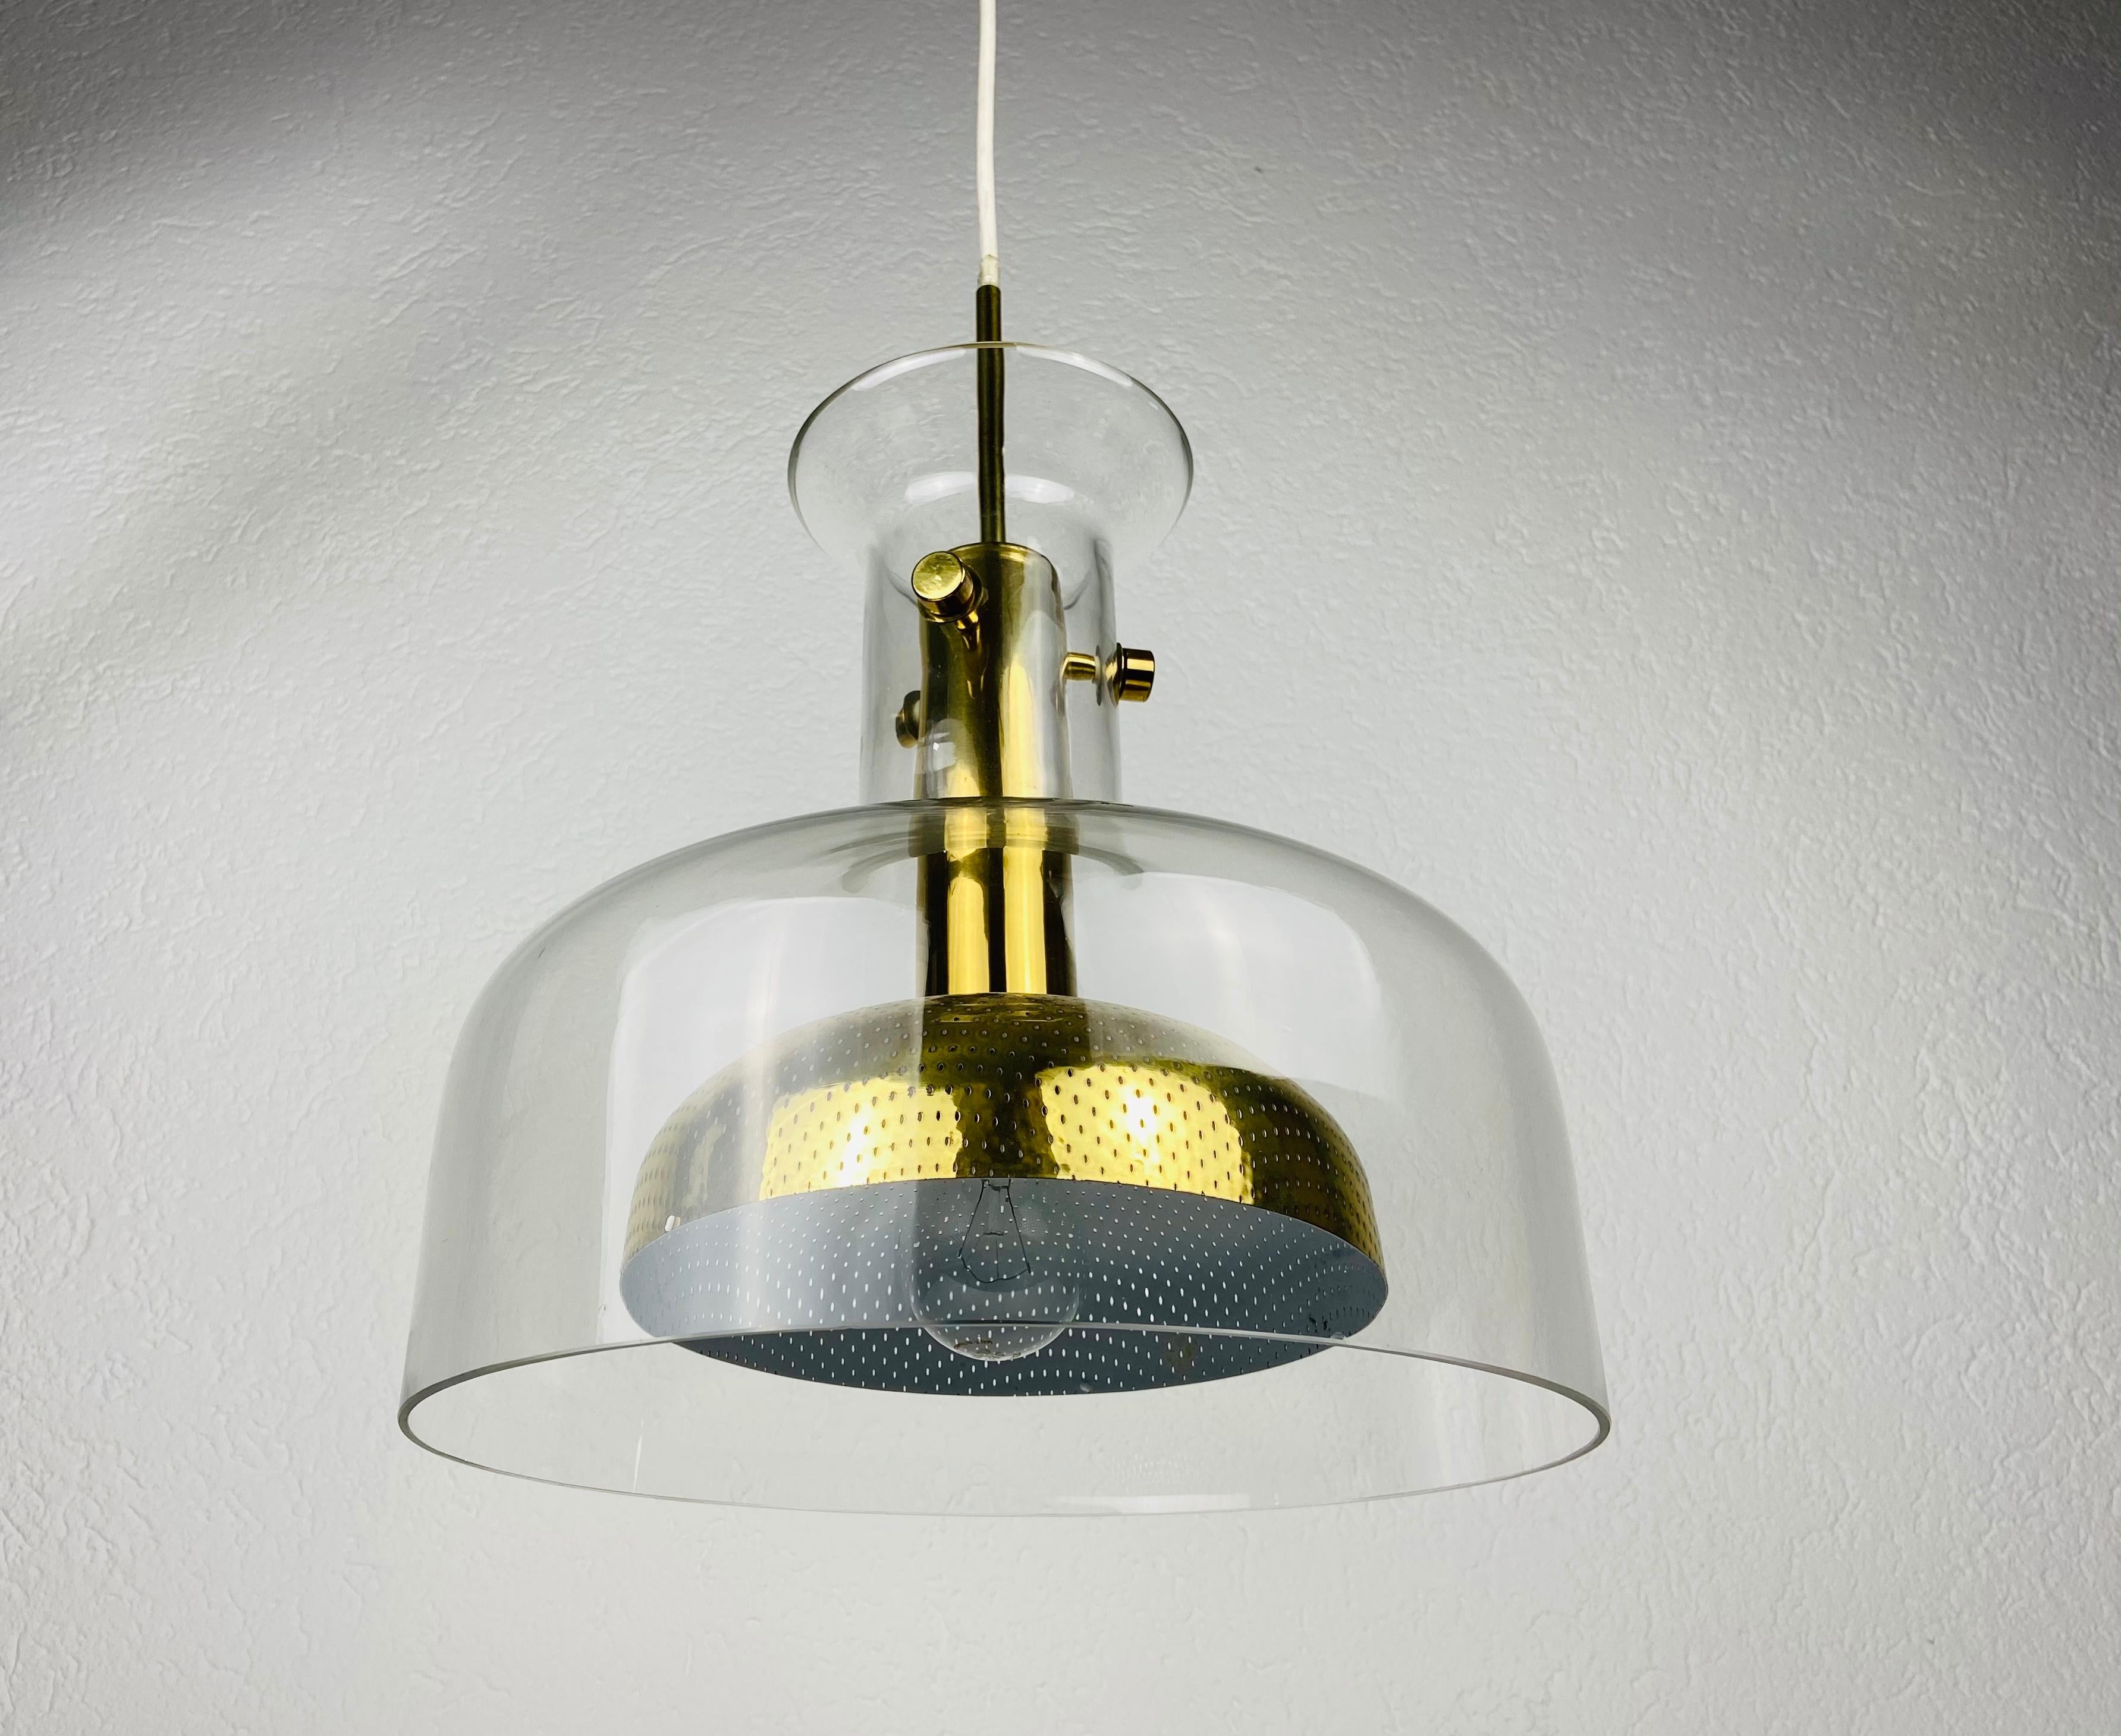 Magnifique pendentif conçu par Anders Pehrson et fabriqué en Suède dans les années 1960. Il est fascinant par son design exclusif. La hauteur de l'éclairage est réglable.

La lampe nécessite une ampoule E26/E27. Fonctionne avec 110/120/220 V. Très